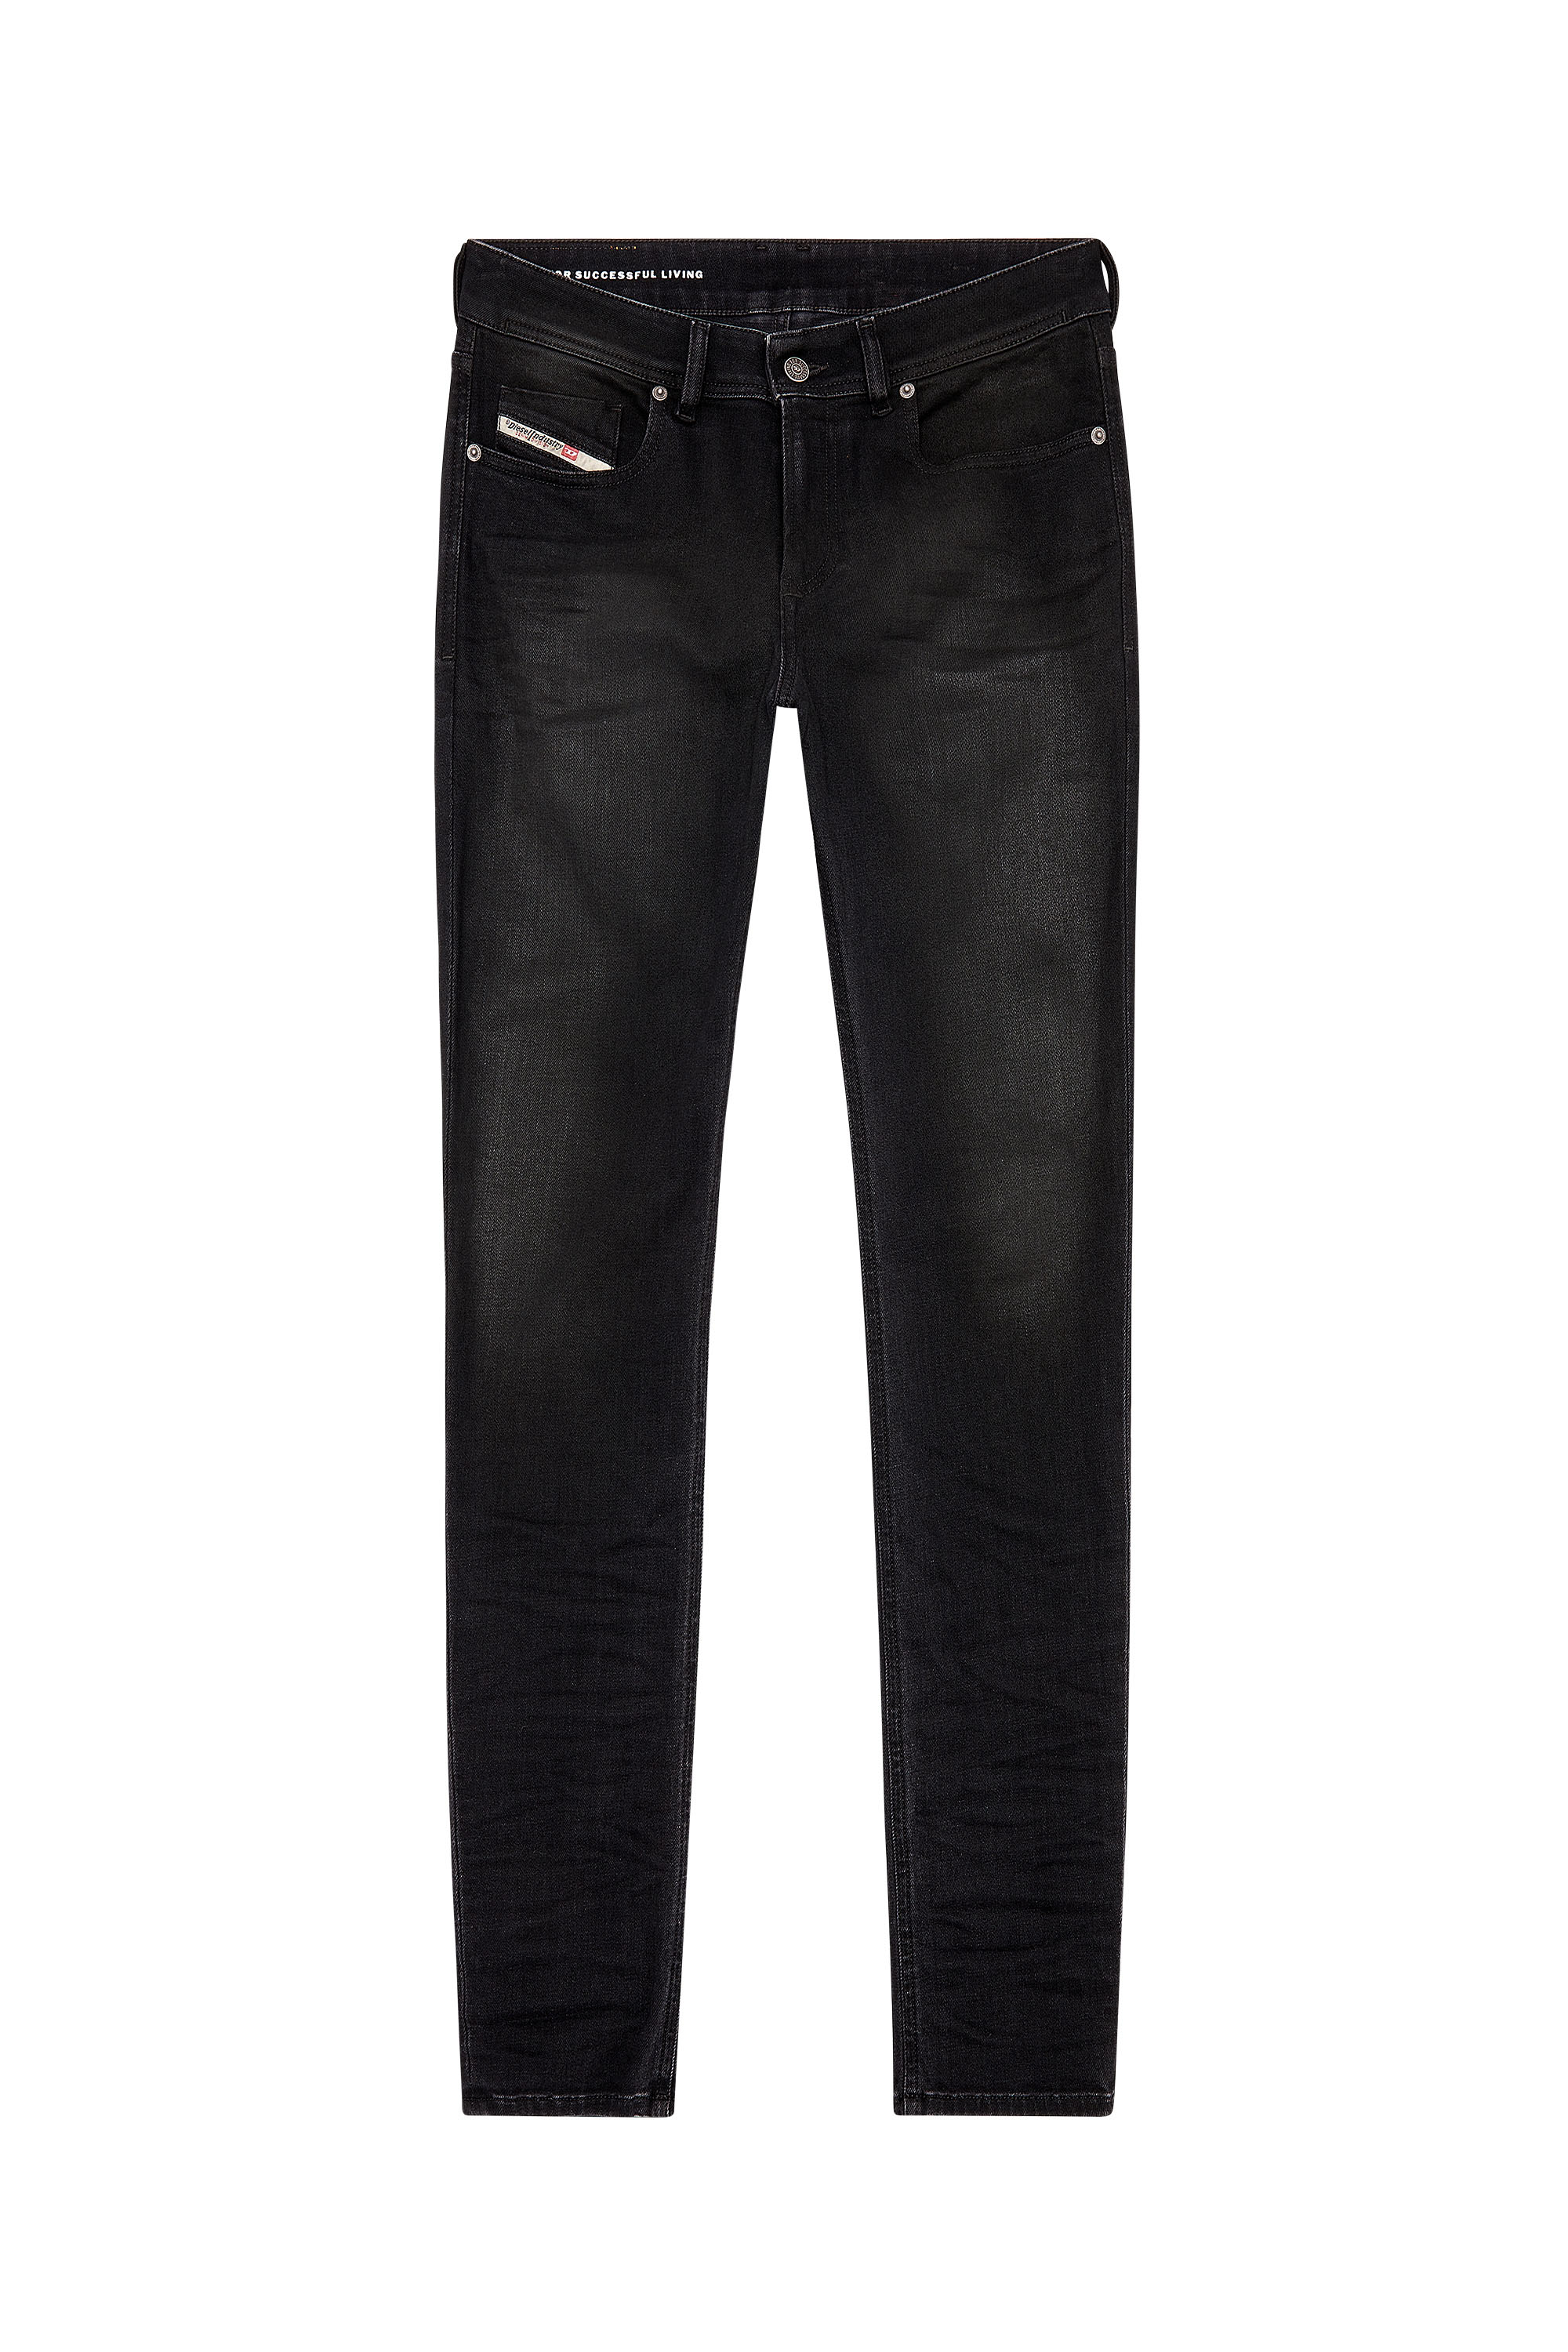 Diesel - Man Skinny Jeans 1979 Sleenker 09H94, Black/Dark grey - Image 3